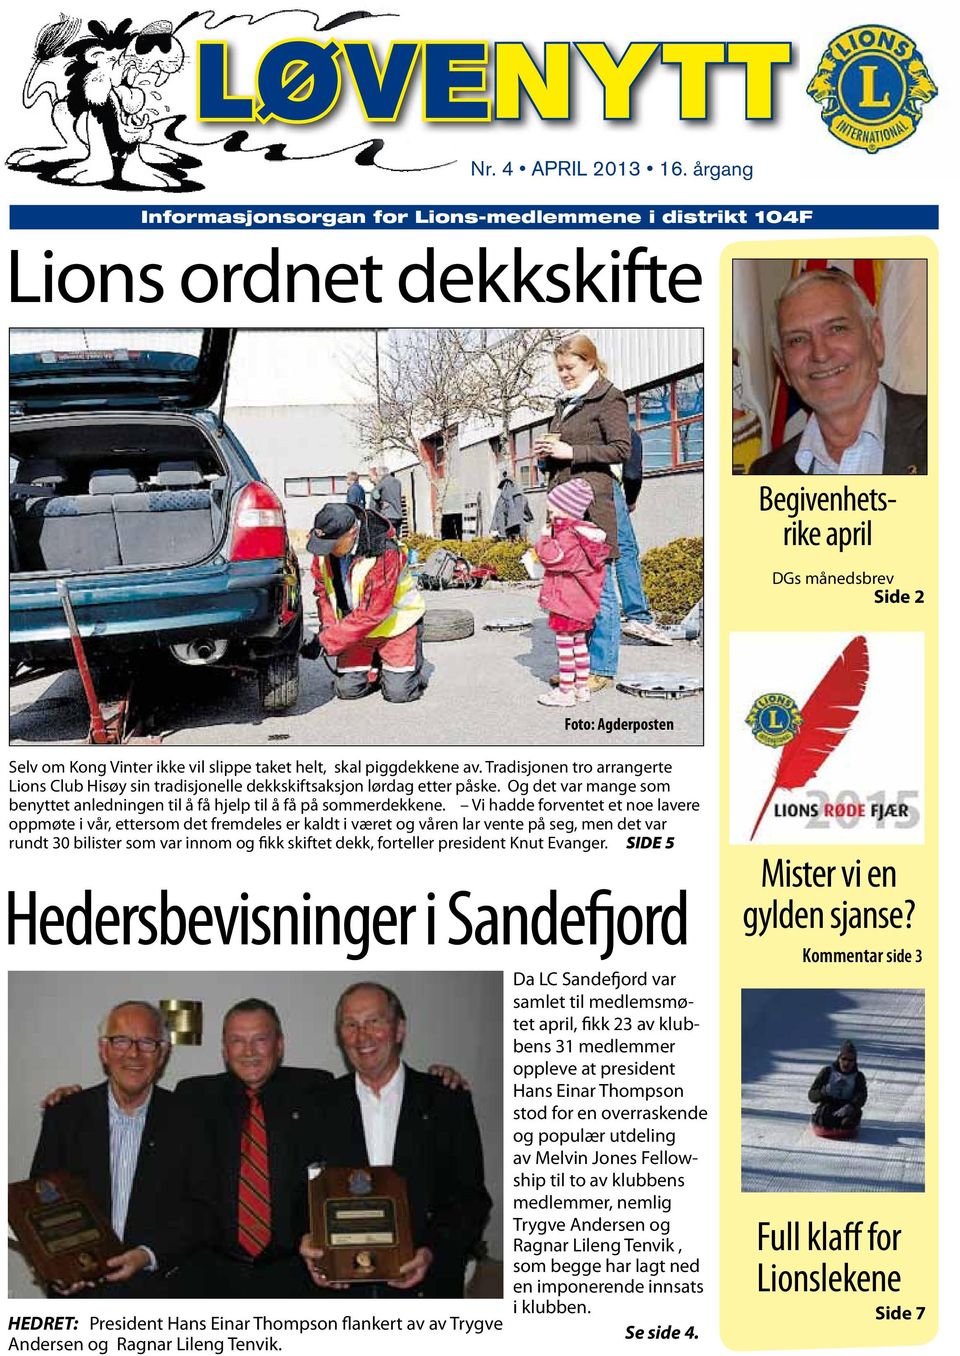 skal piggdekkene av. Tradisjonen tro arrangerte Lions Club Hisøy sin tradisjonelle dekkskiftsaksjon lørdag etter påske.